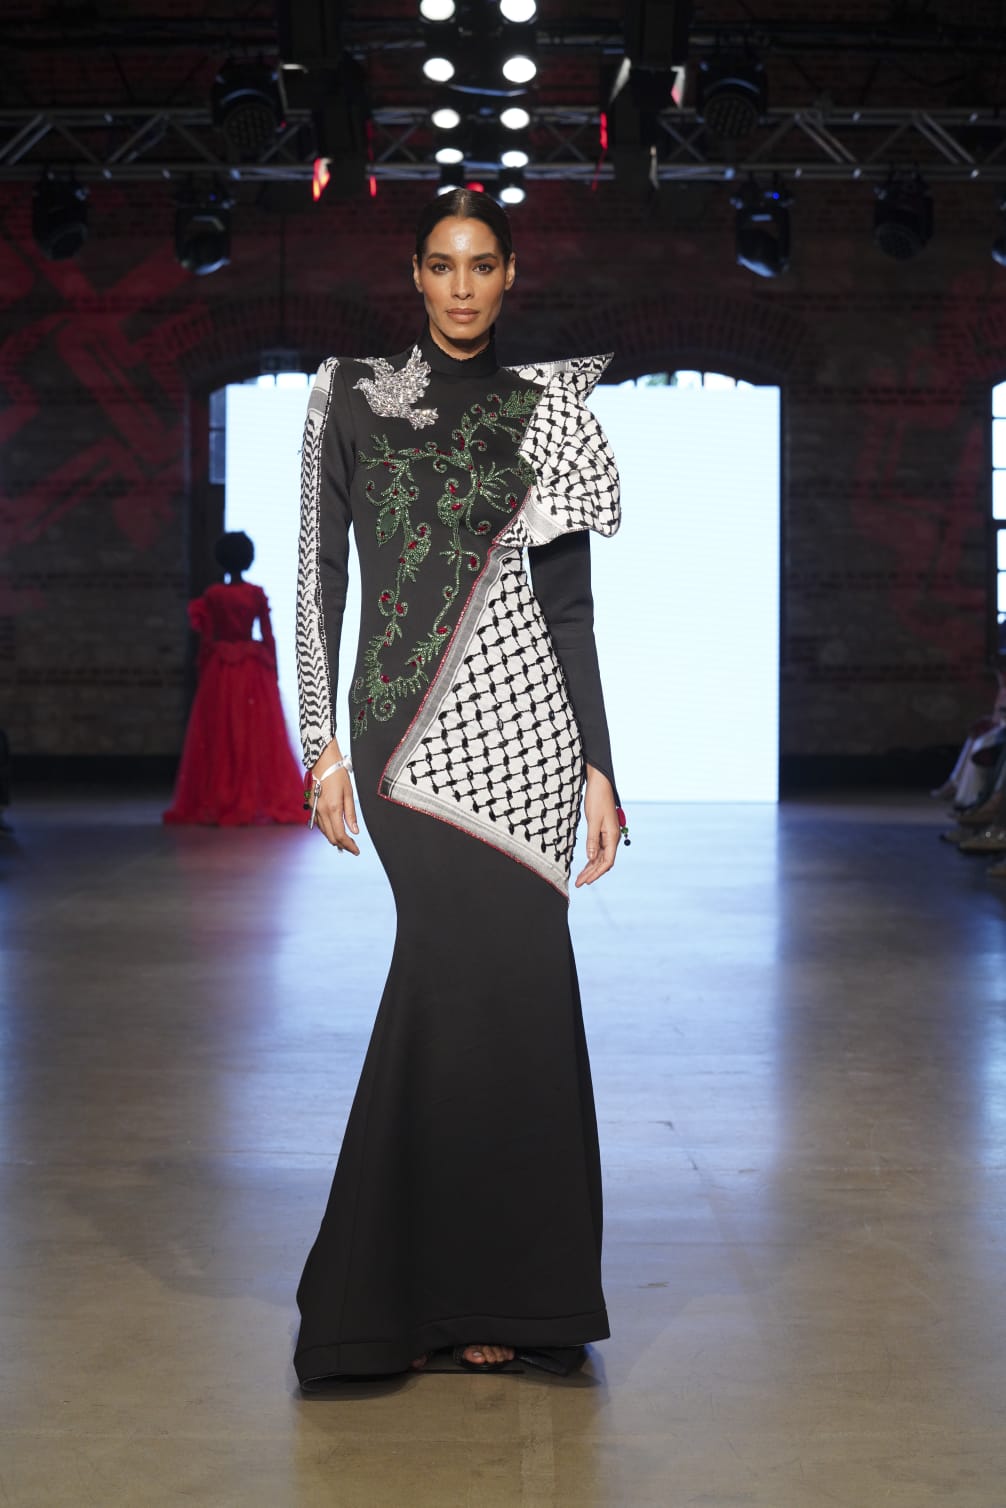 مصممة الأزياء اليافاوية سينين خروب تُبدع بادخال الكوفية الفلسطينية في تصميماتها 